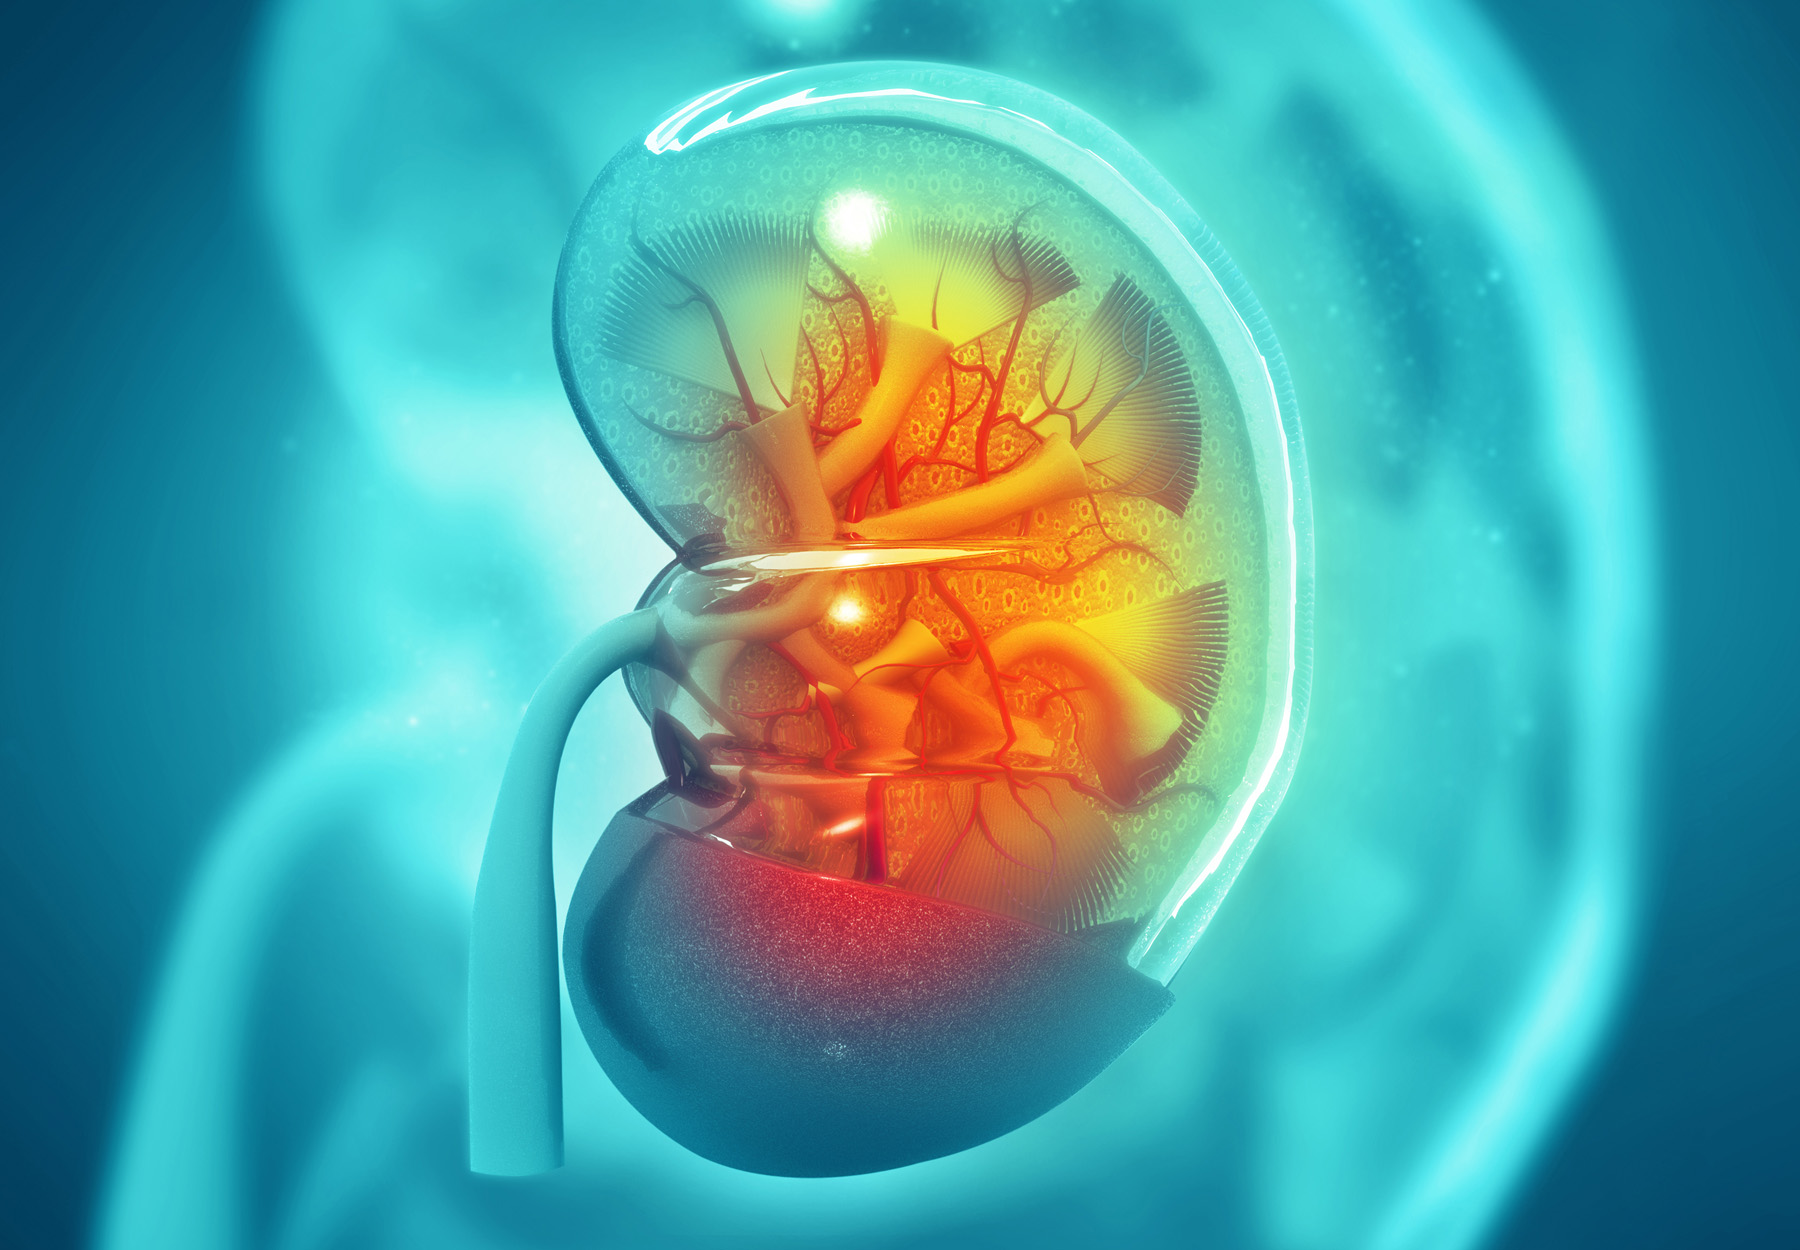 teal and orange kidney illustration to symbolize a kidney transplant test